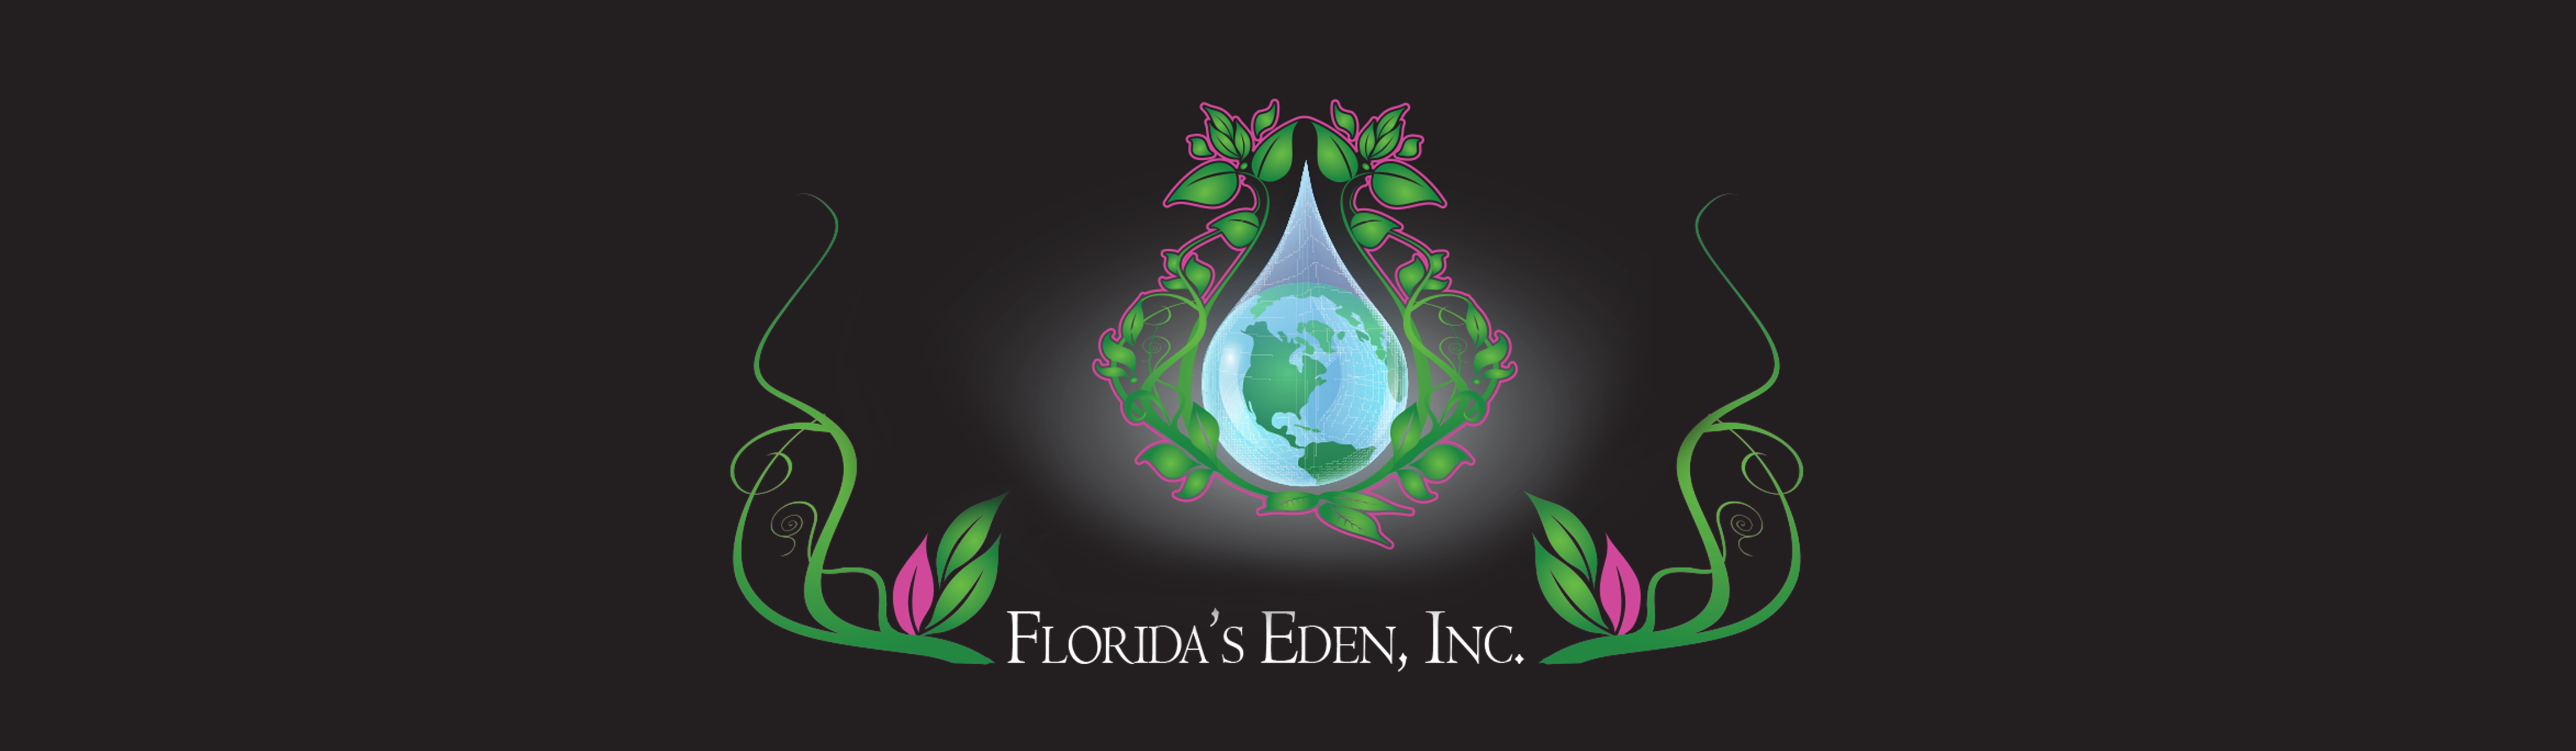 Florida's Eden Inc.